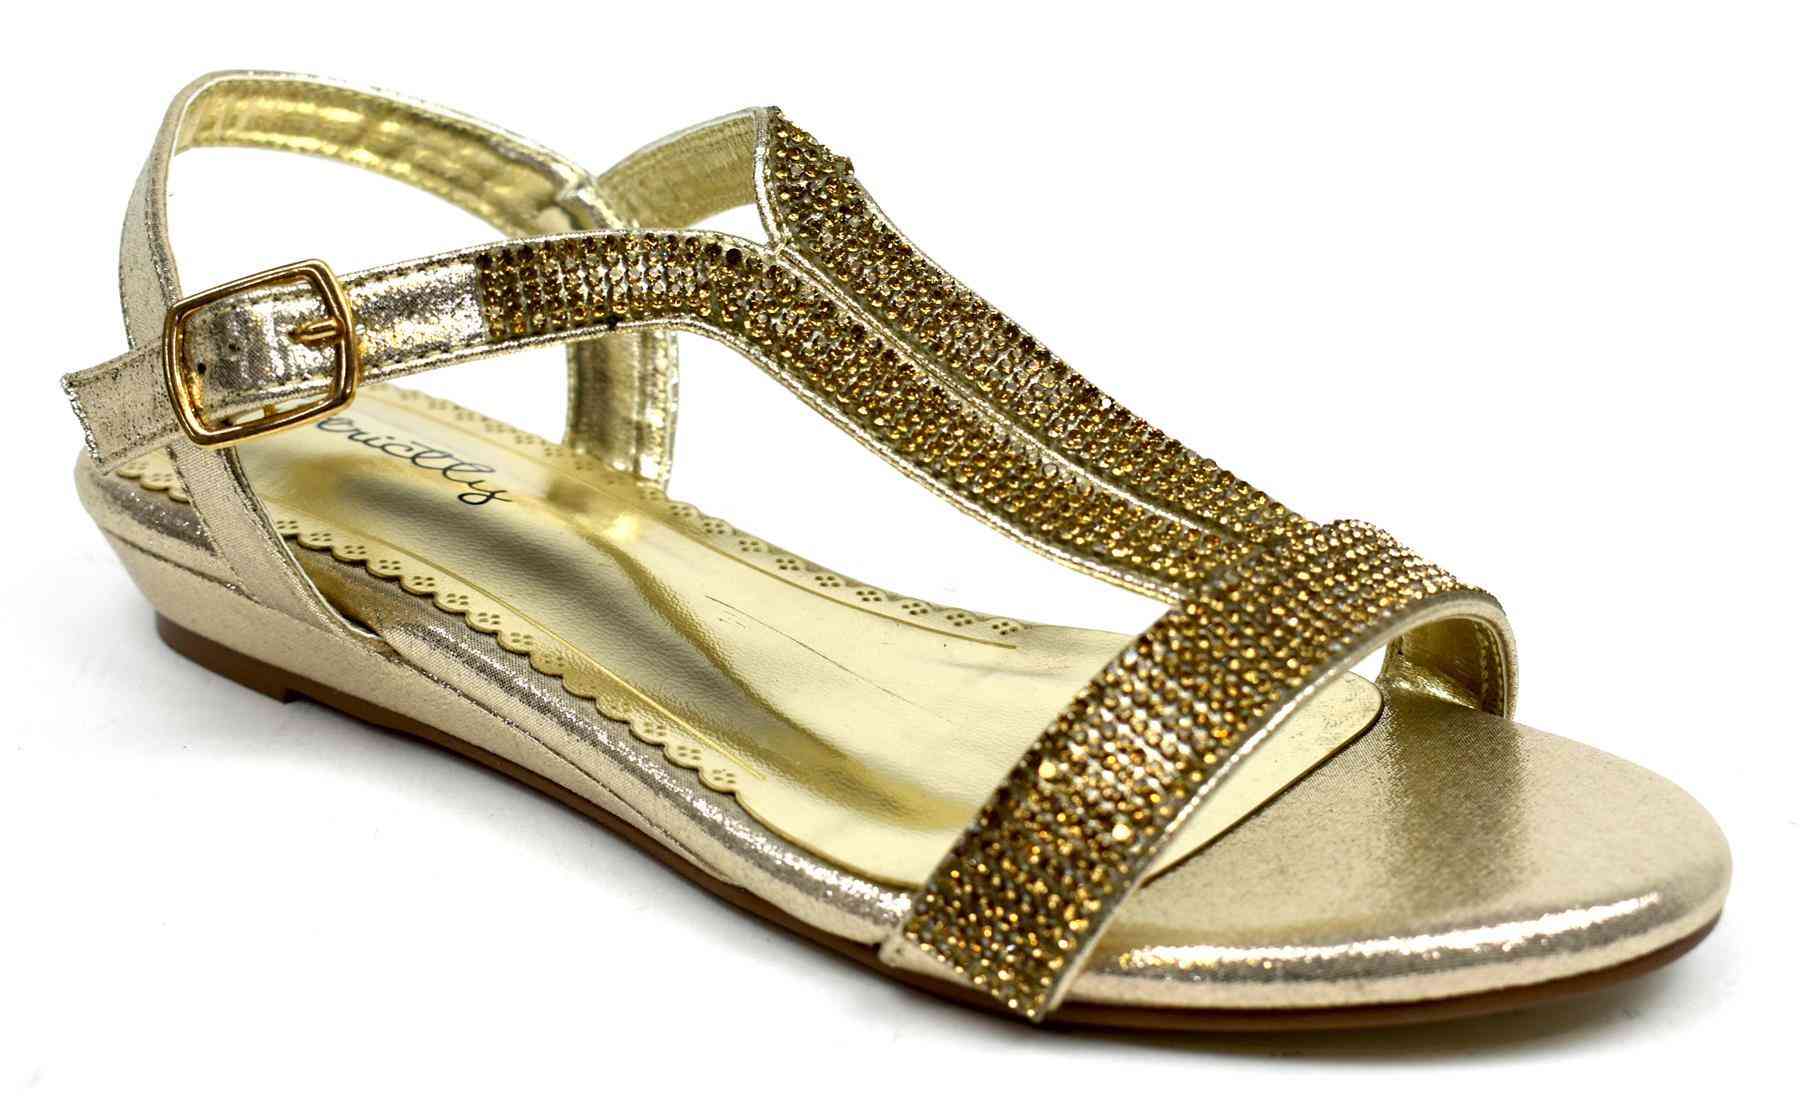 Alacsony ékű csillogású arany cipő